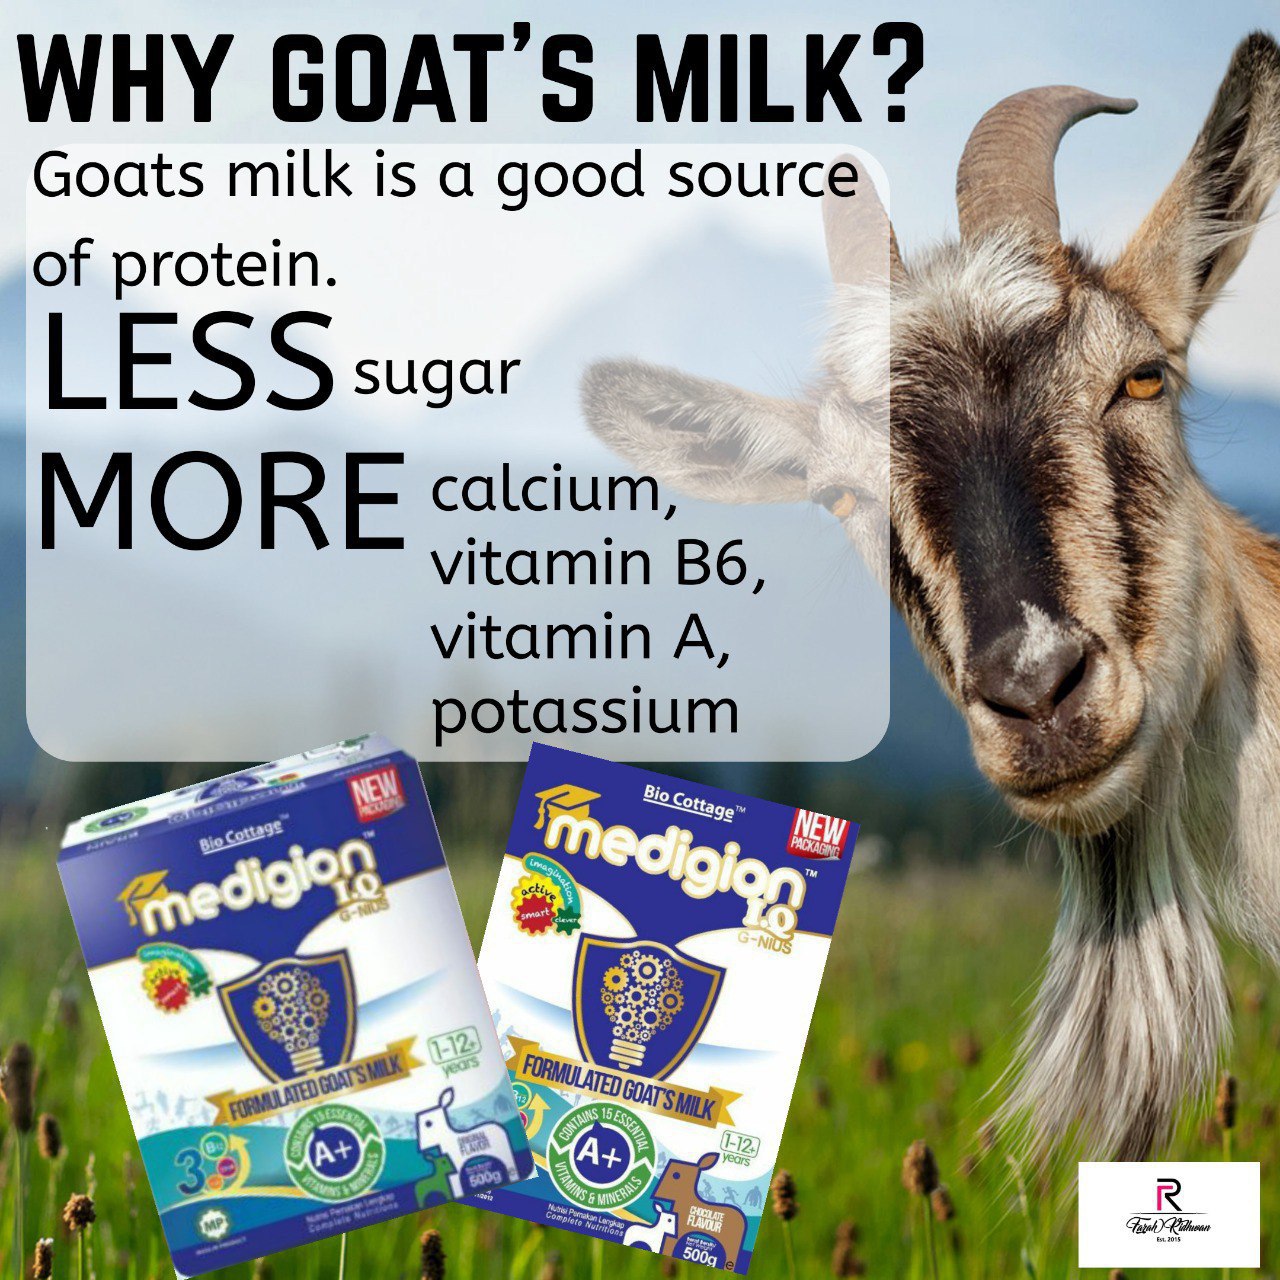 IQ Medigion Goat Milk (not valid for customers)